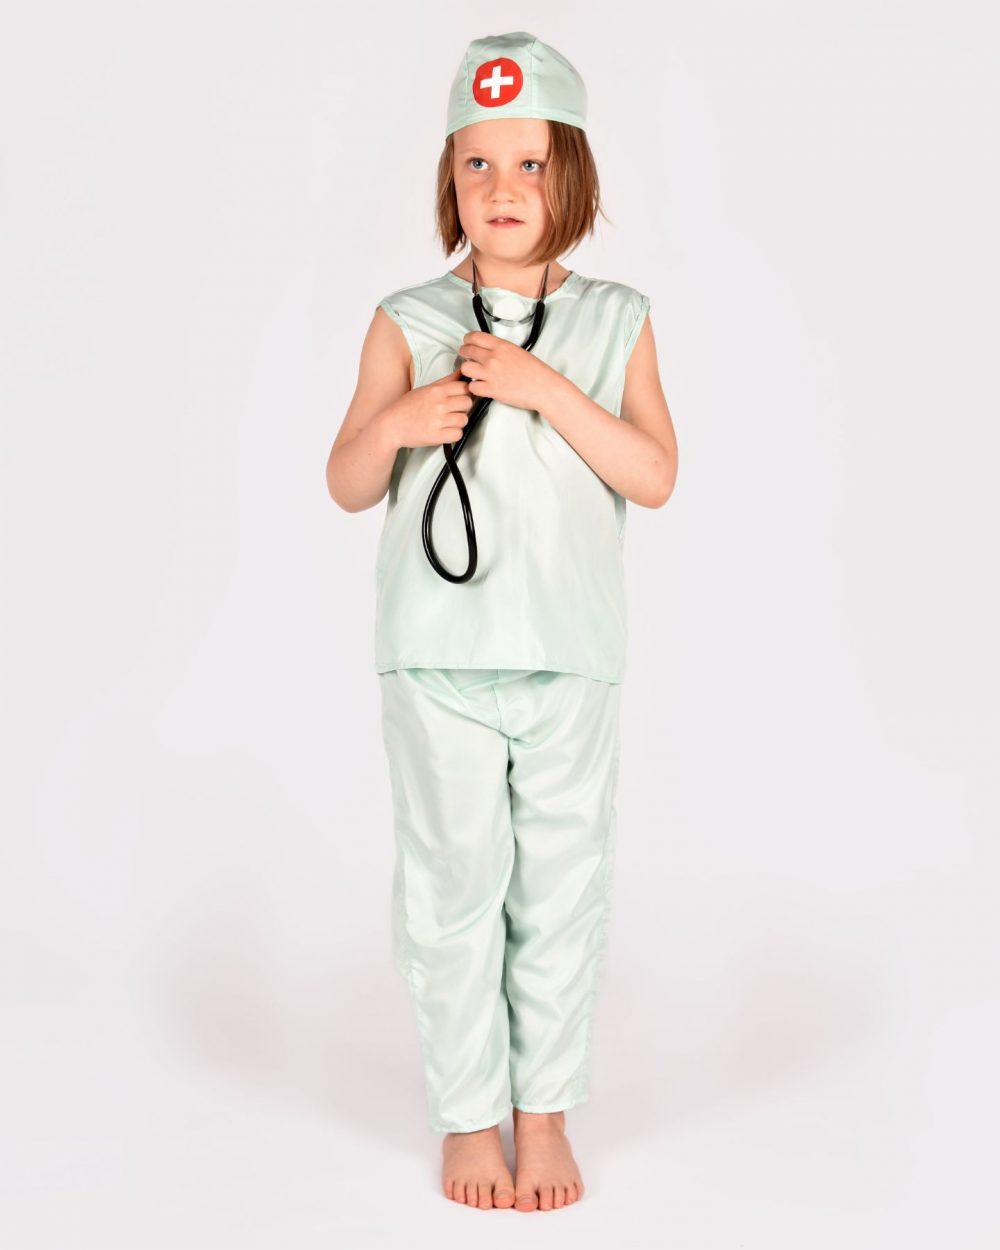 Flicka som bär en mintgrön doktorsdräkt och lyssnar på sitt hjärta med ett svart stetoskop.